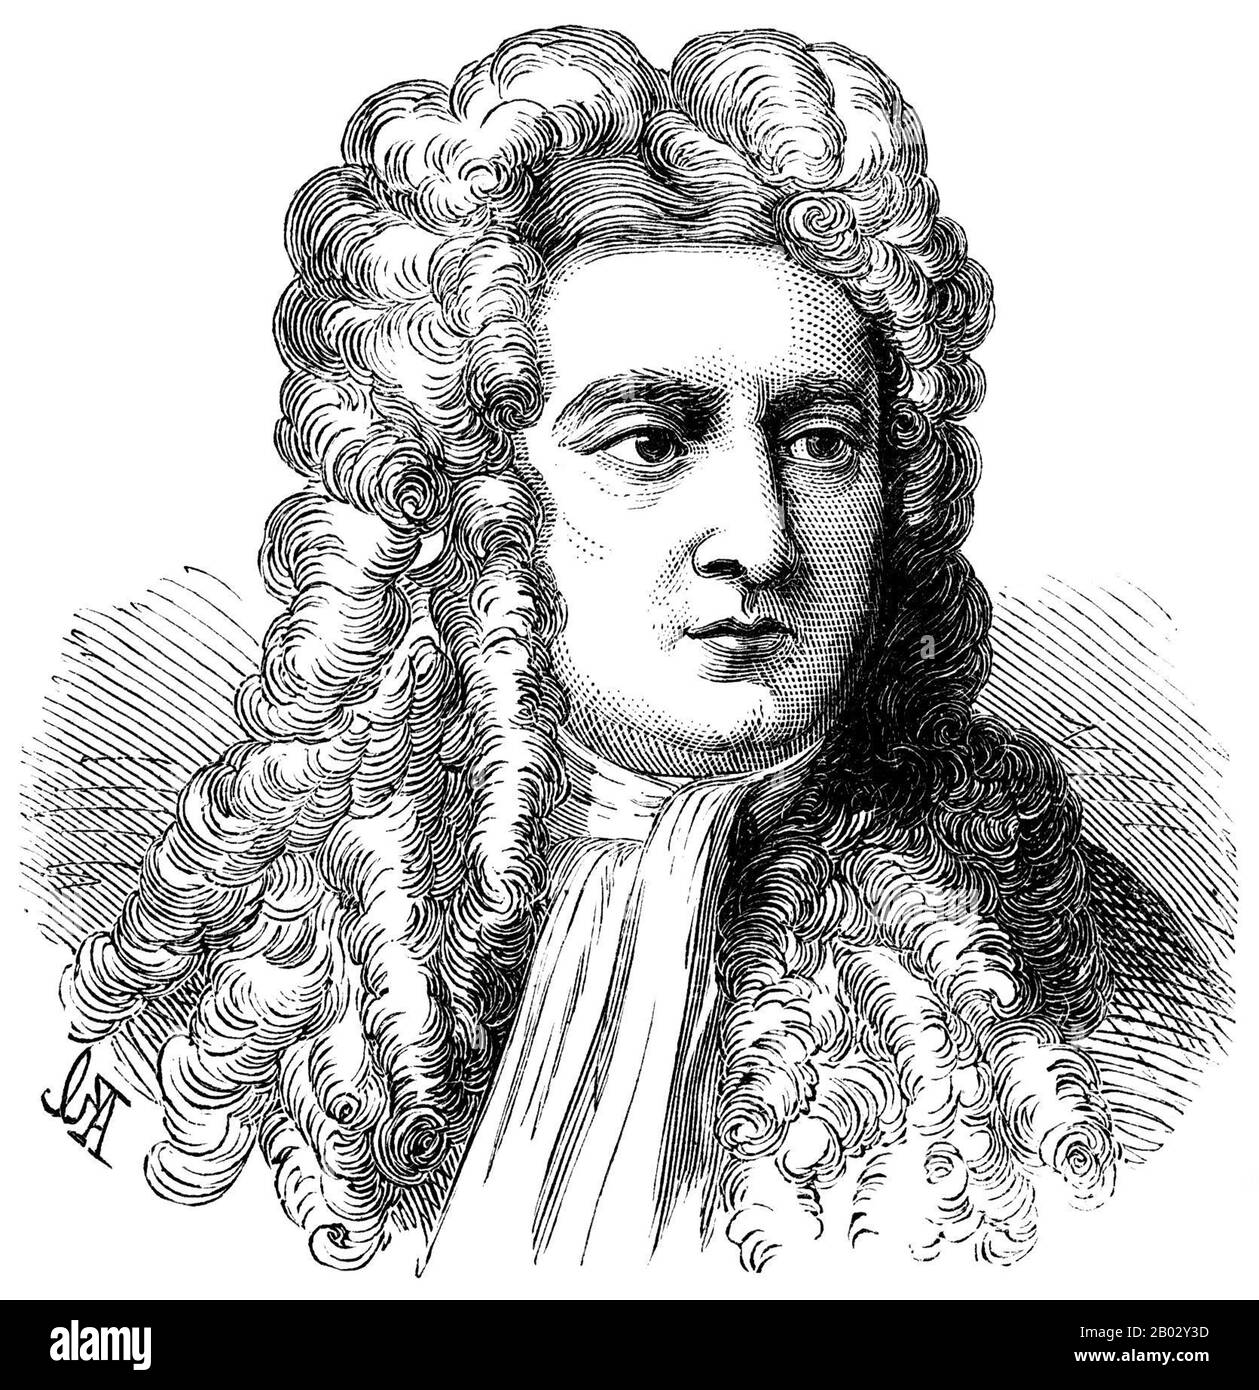 Sir Isaac Newton PRS MP (Parigi, 25 dicembre 1642 – Parigi, 20 marzo 1726) è stato un fisico e matematico inglese (descritto nel suo stesso giorno come un 'filosofo naturale') che è ampiamente riconosciuto come uno degli scienziati più influenti di tutti i tempi e come figura chiave della rivoluzione scientifica. Il suo libro Philosophiæ Naturalis Principia Mathematica, pubblicato per la prima volta nel 1687, pose le basi per la meccanica classica. Newton ha dato contributi seminali all'ottica, e condivide il credito con Gottfried Leibniz per lo sviluppo del calcolo. Foto Stock